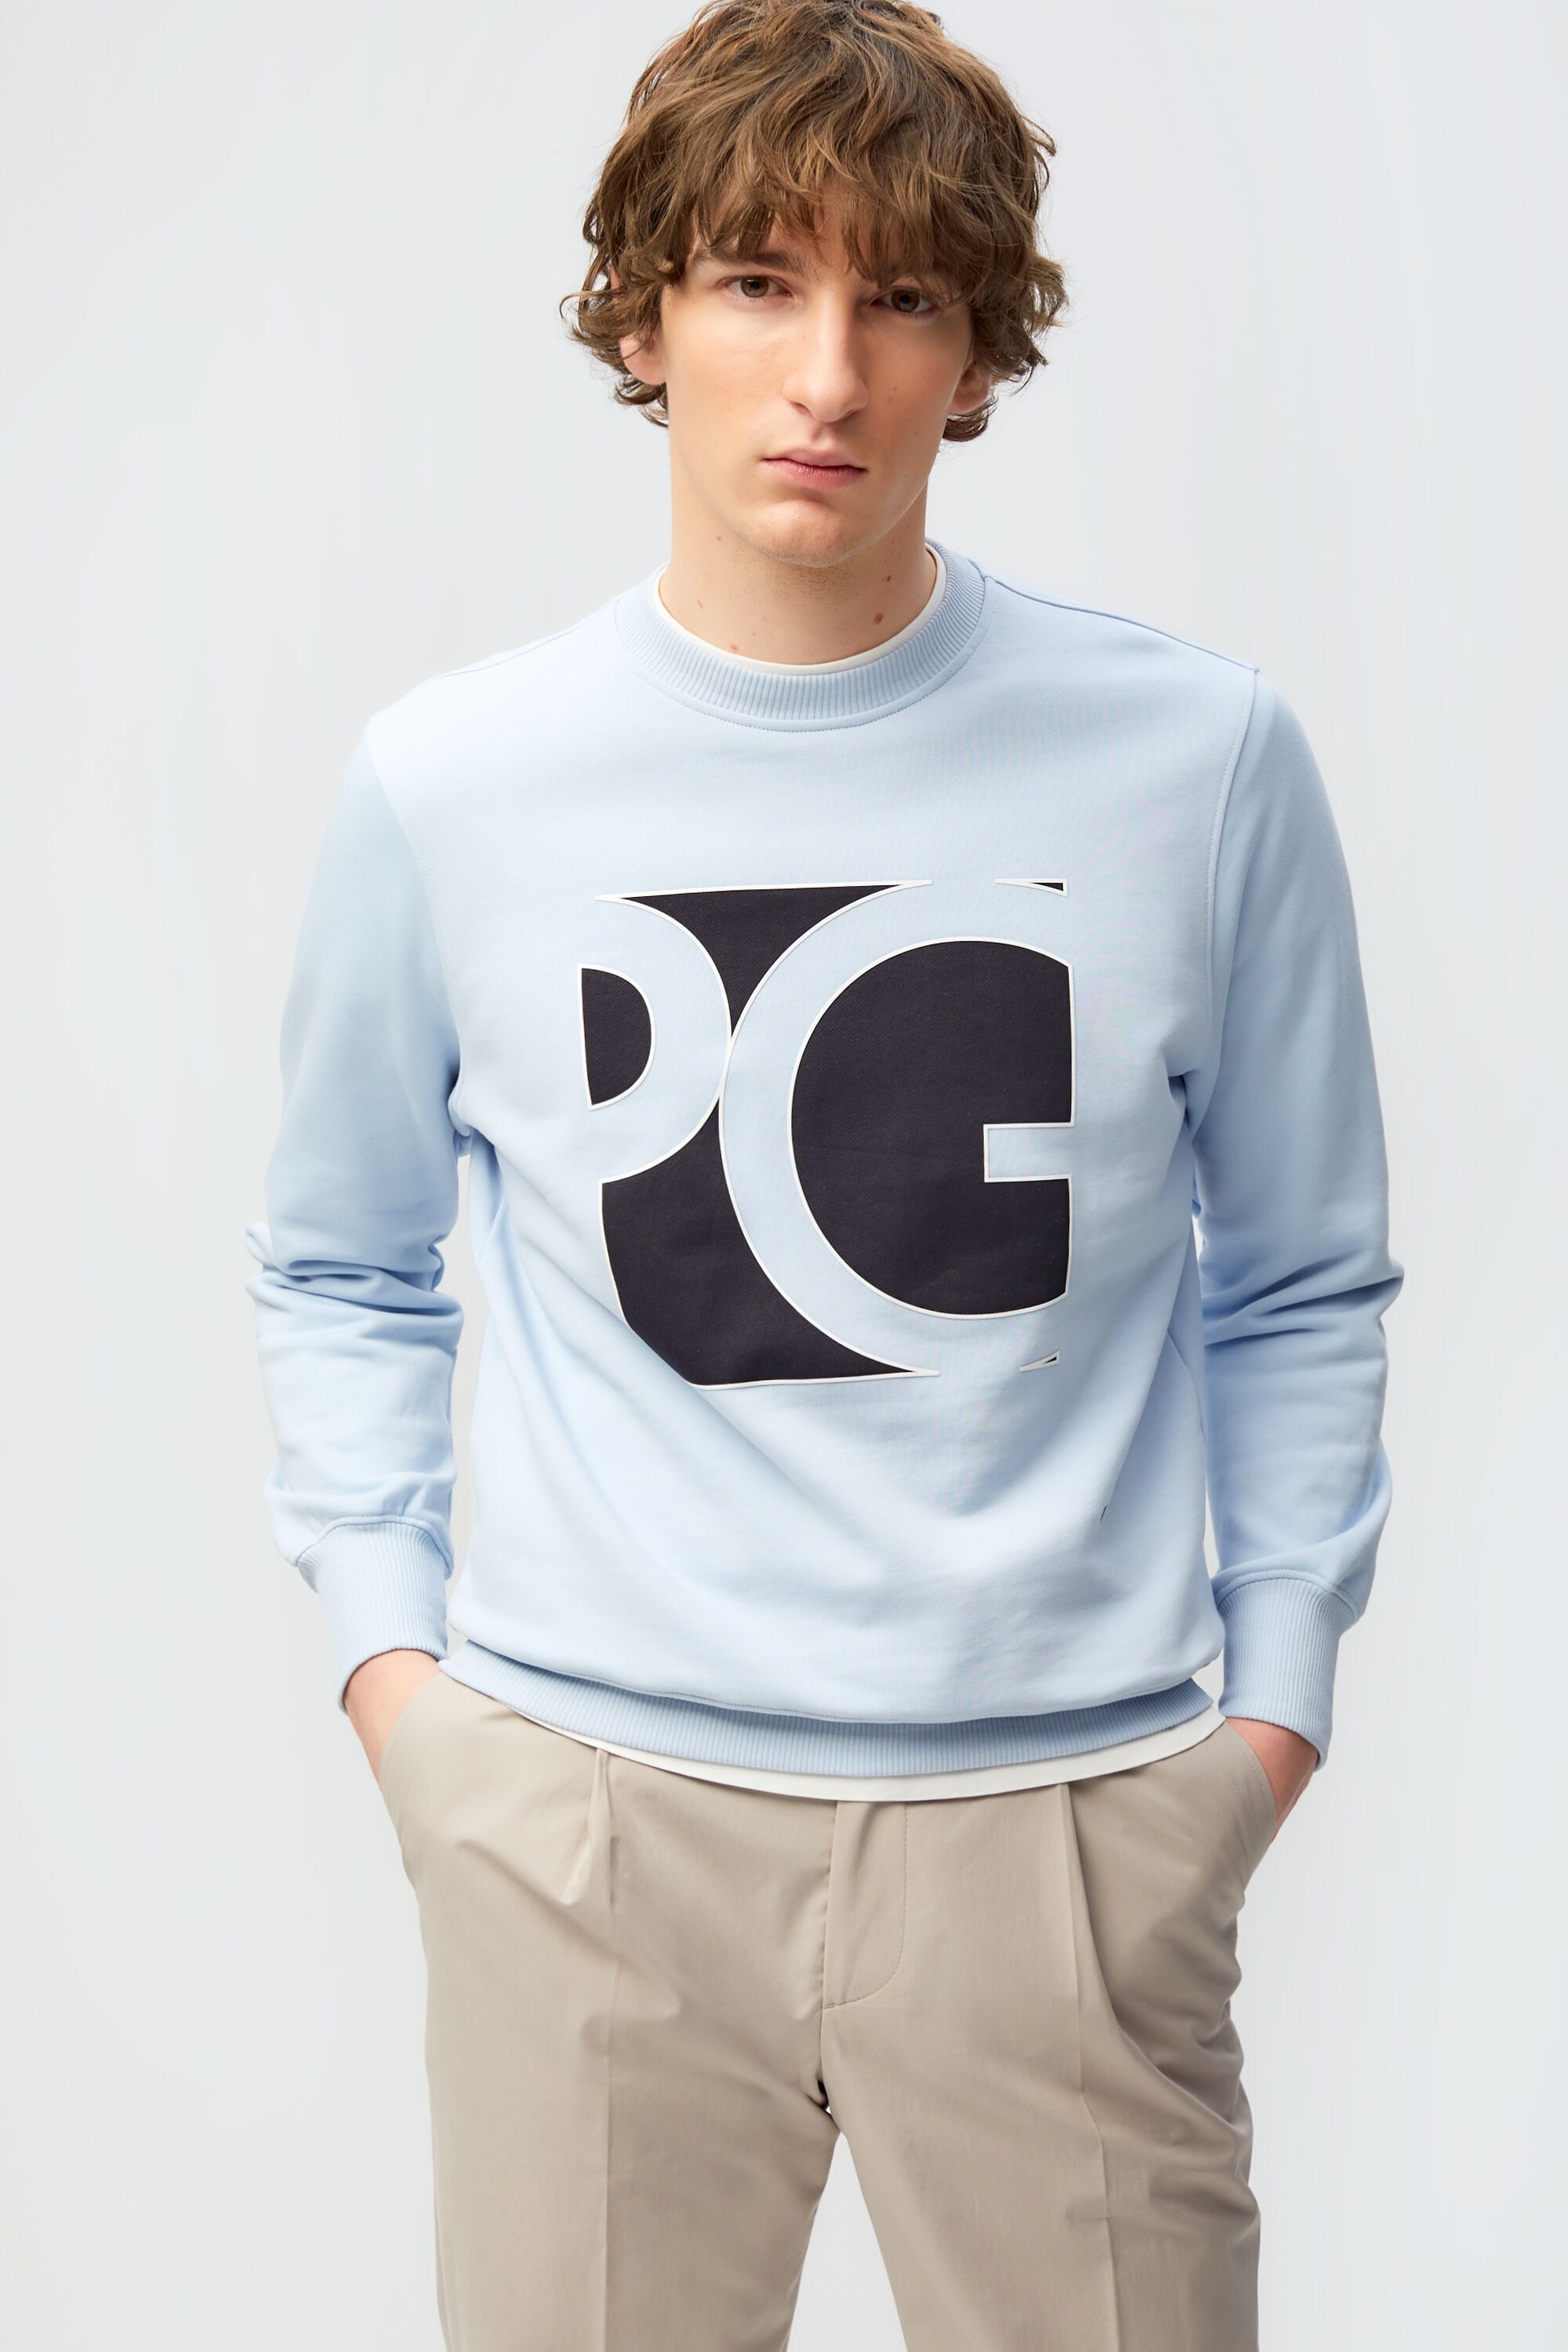 PG cube printed sweatshirt